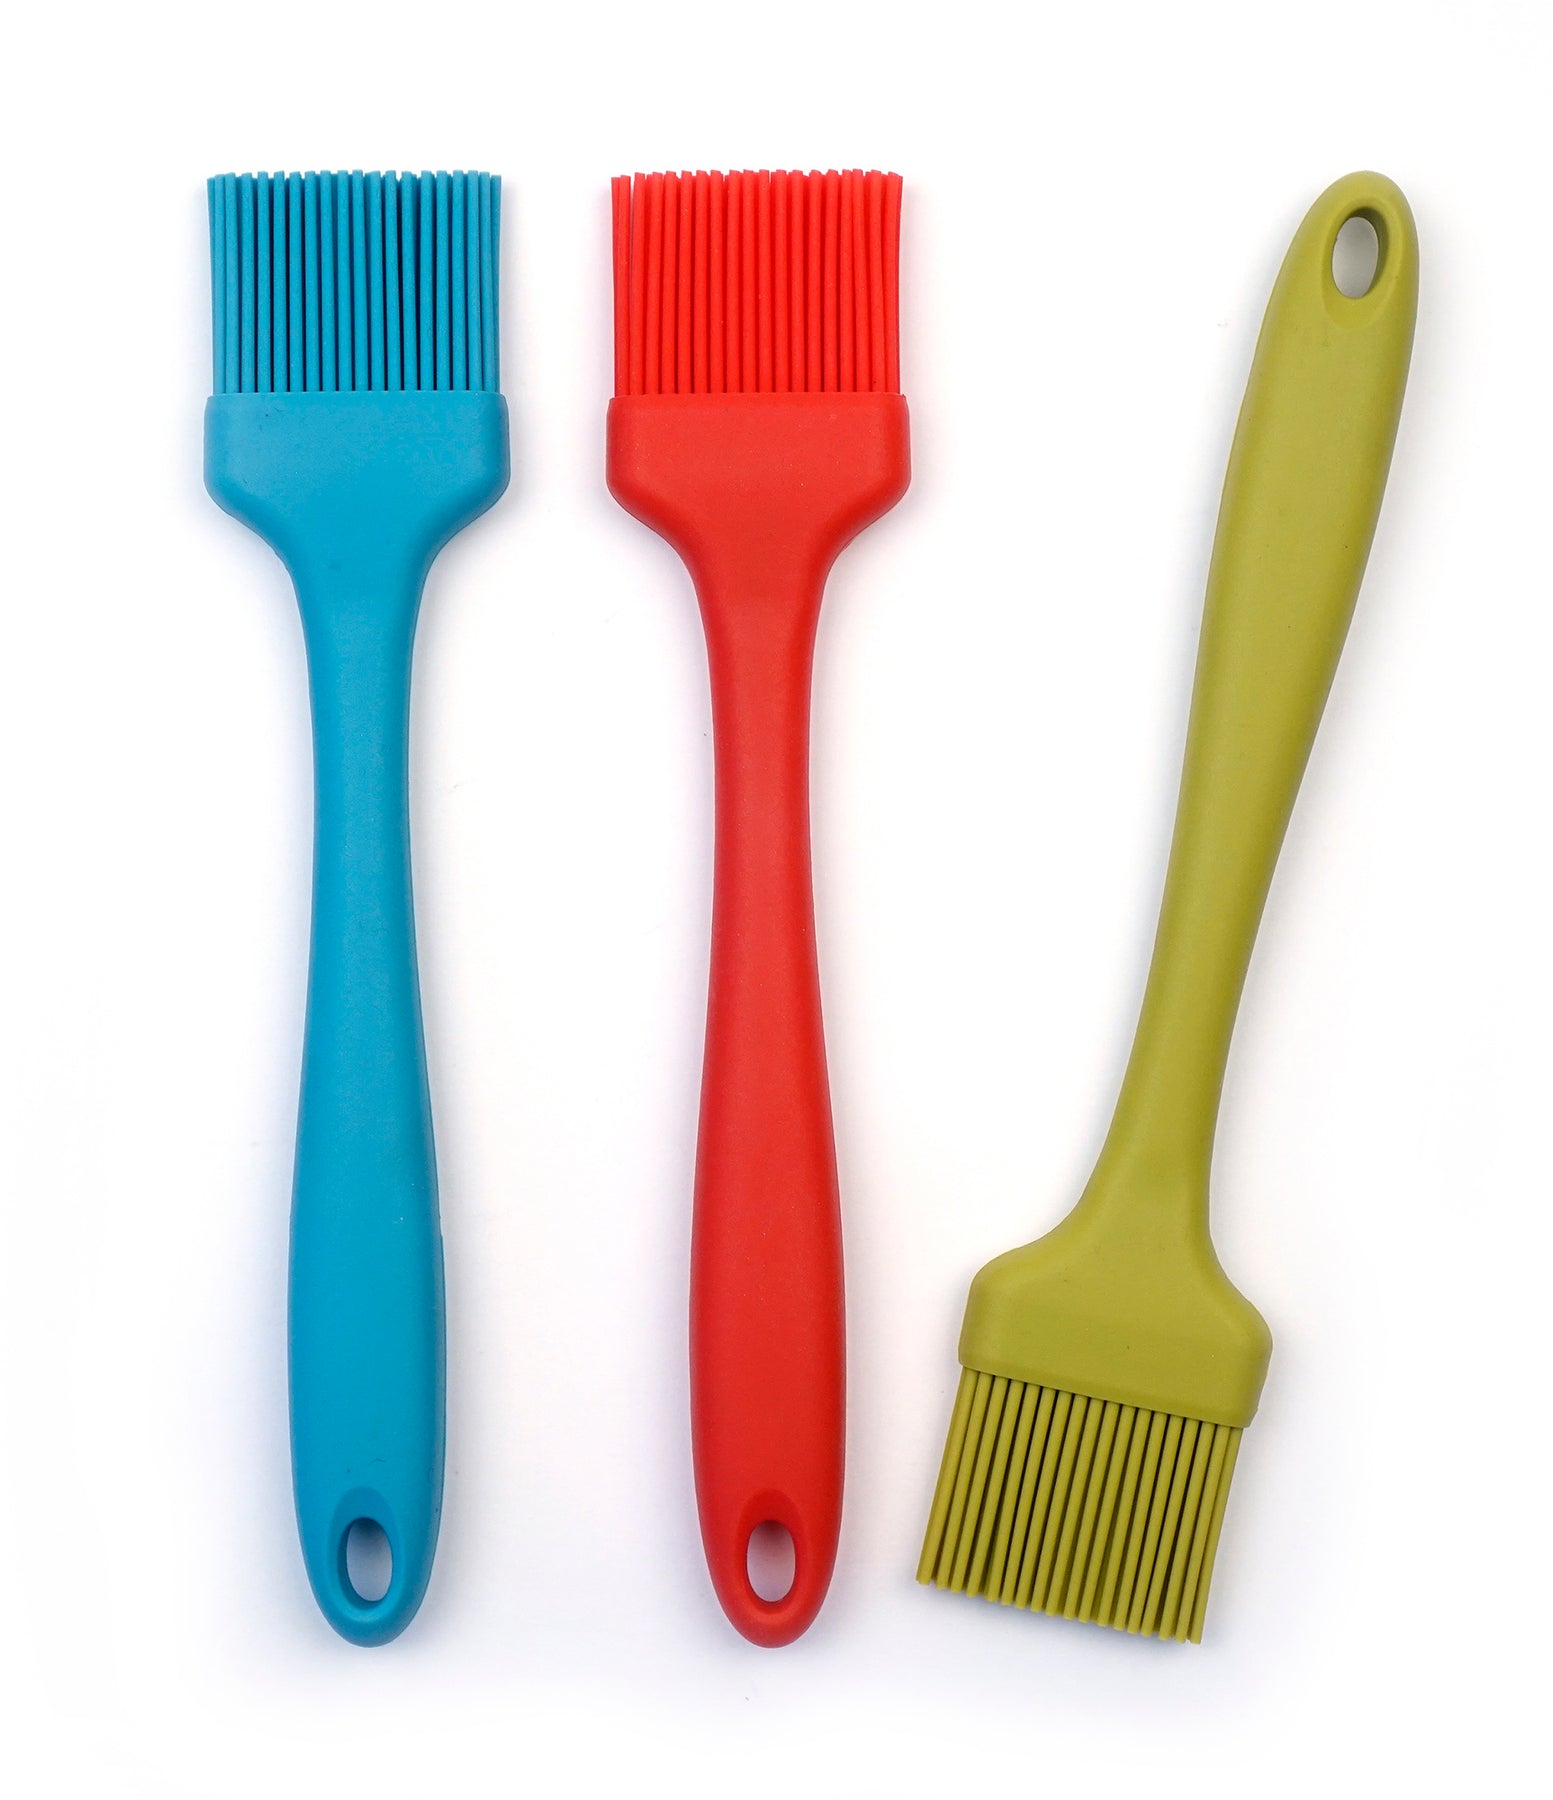 Silicone Dish Brush - Turquoise – RSVP International